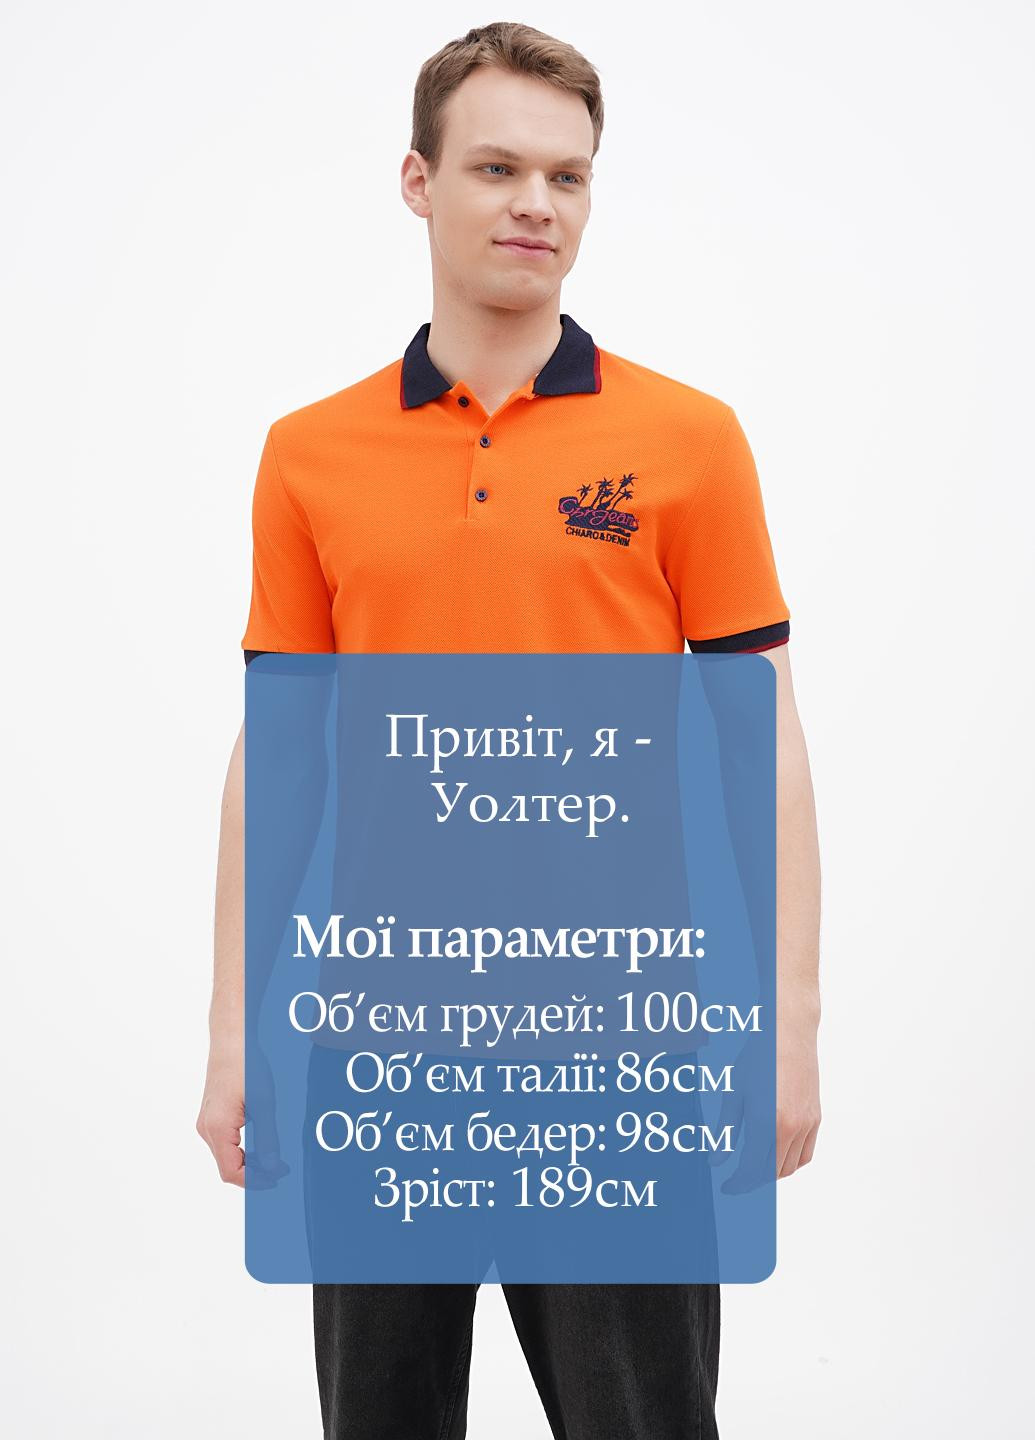 Оранжевая футболка-поло для мужчин Chiarotex однотонная